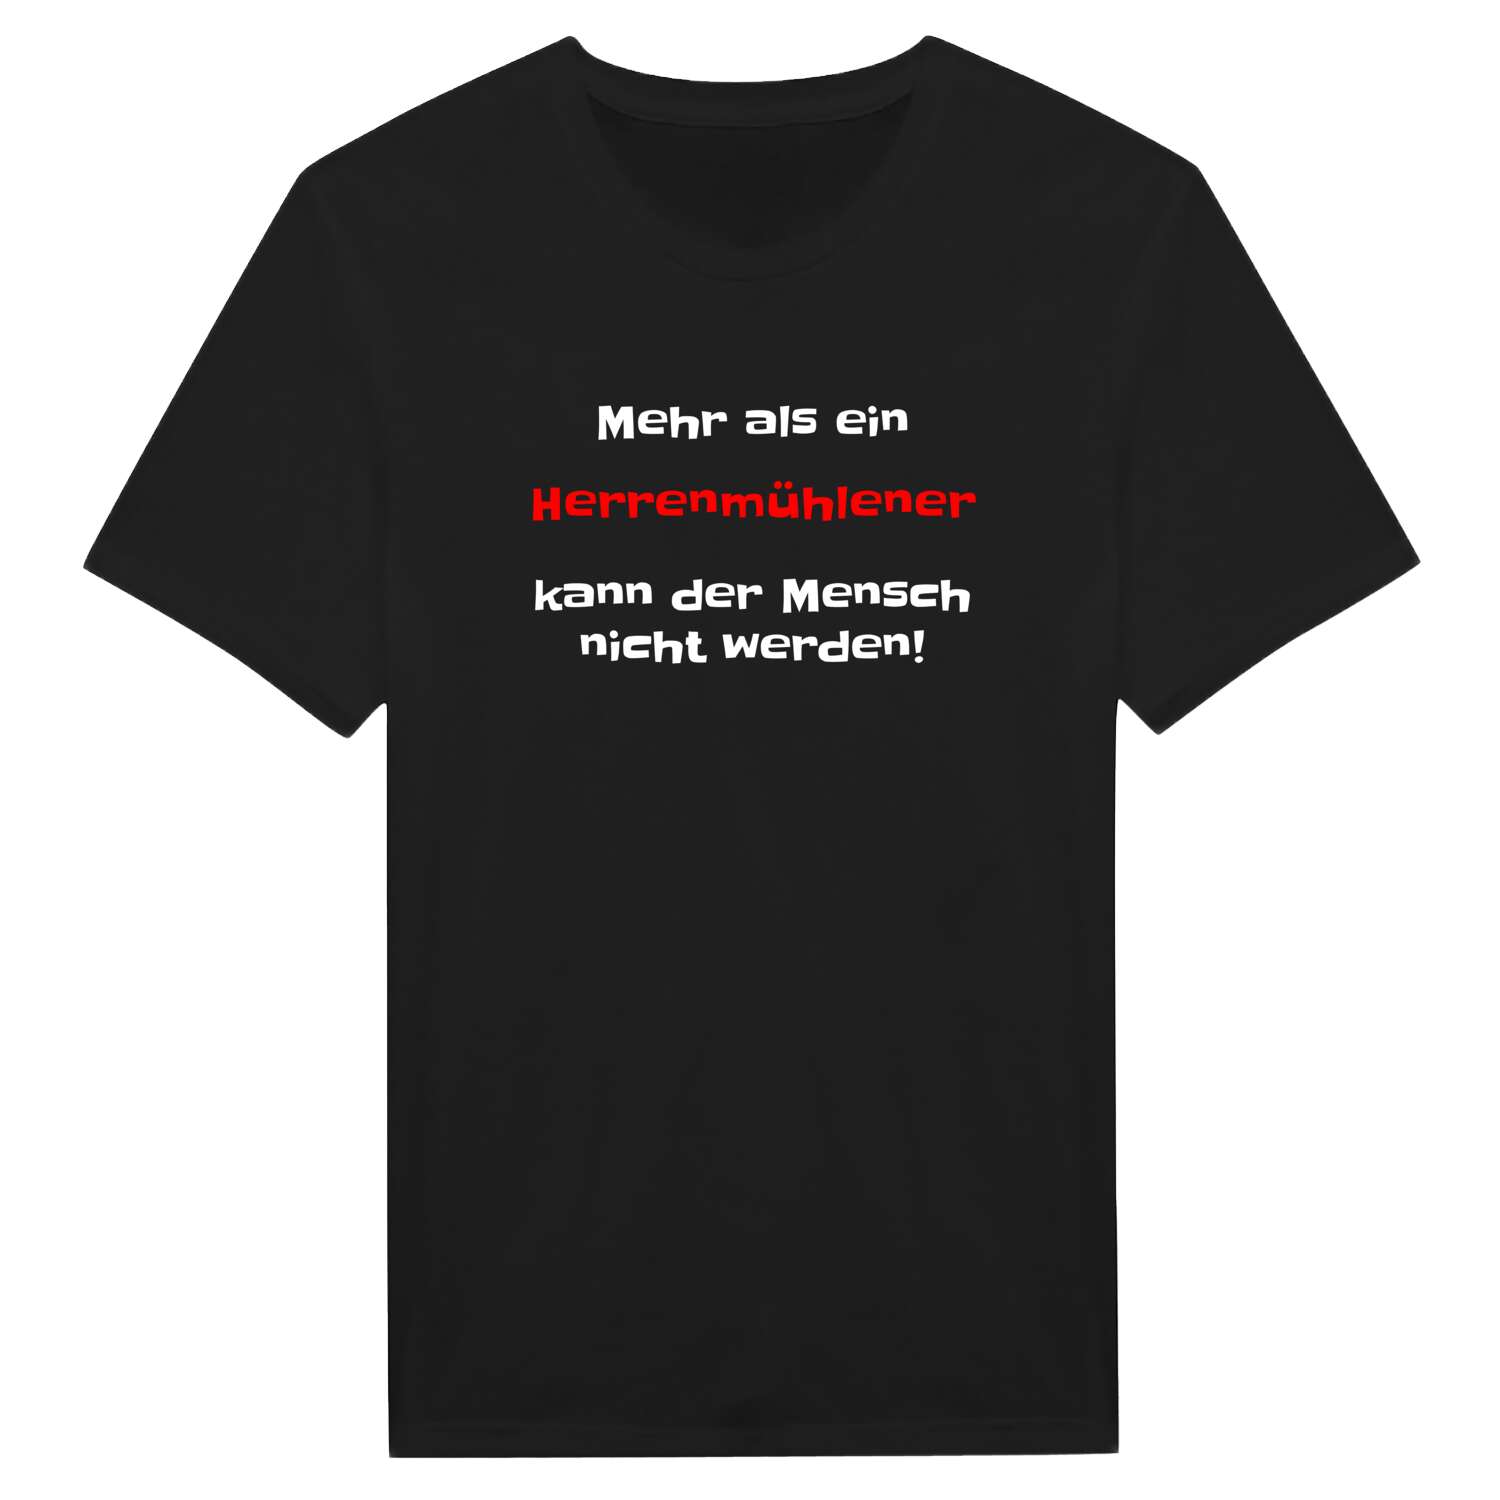 Herrenmühle T-Shirt »Mehr als ein«